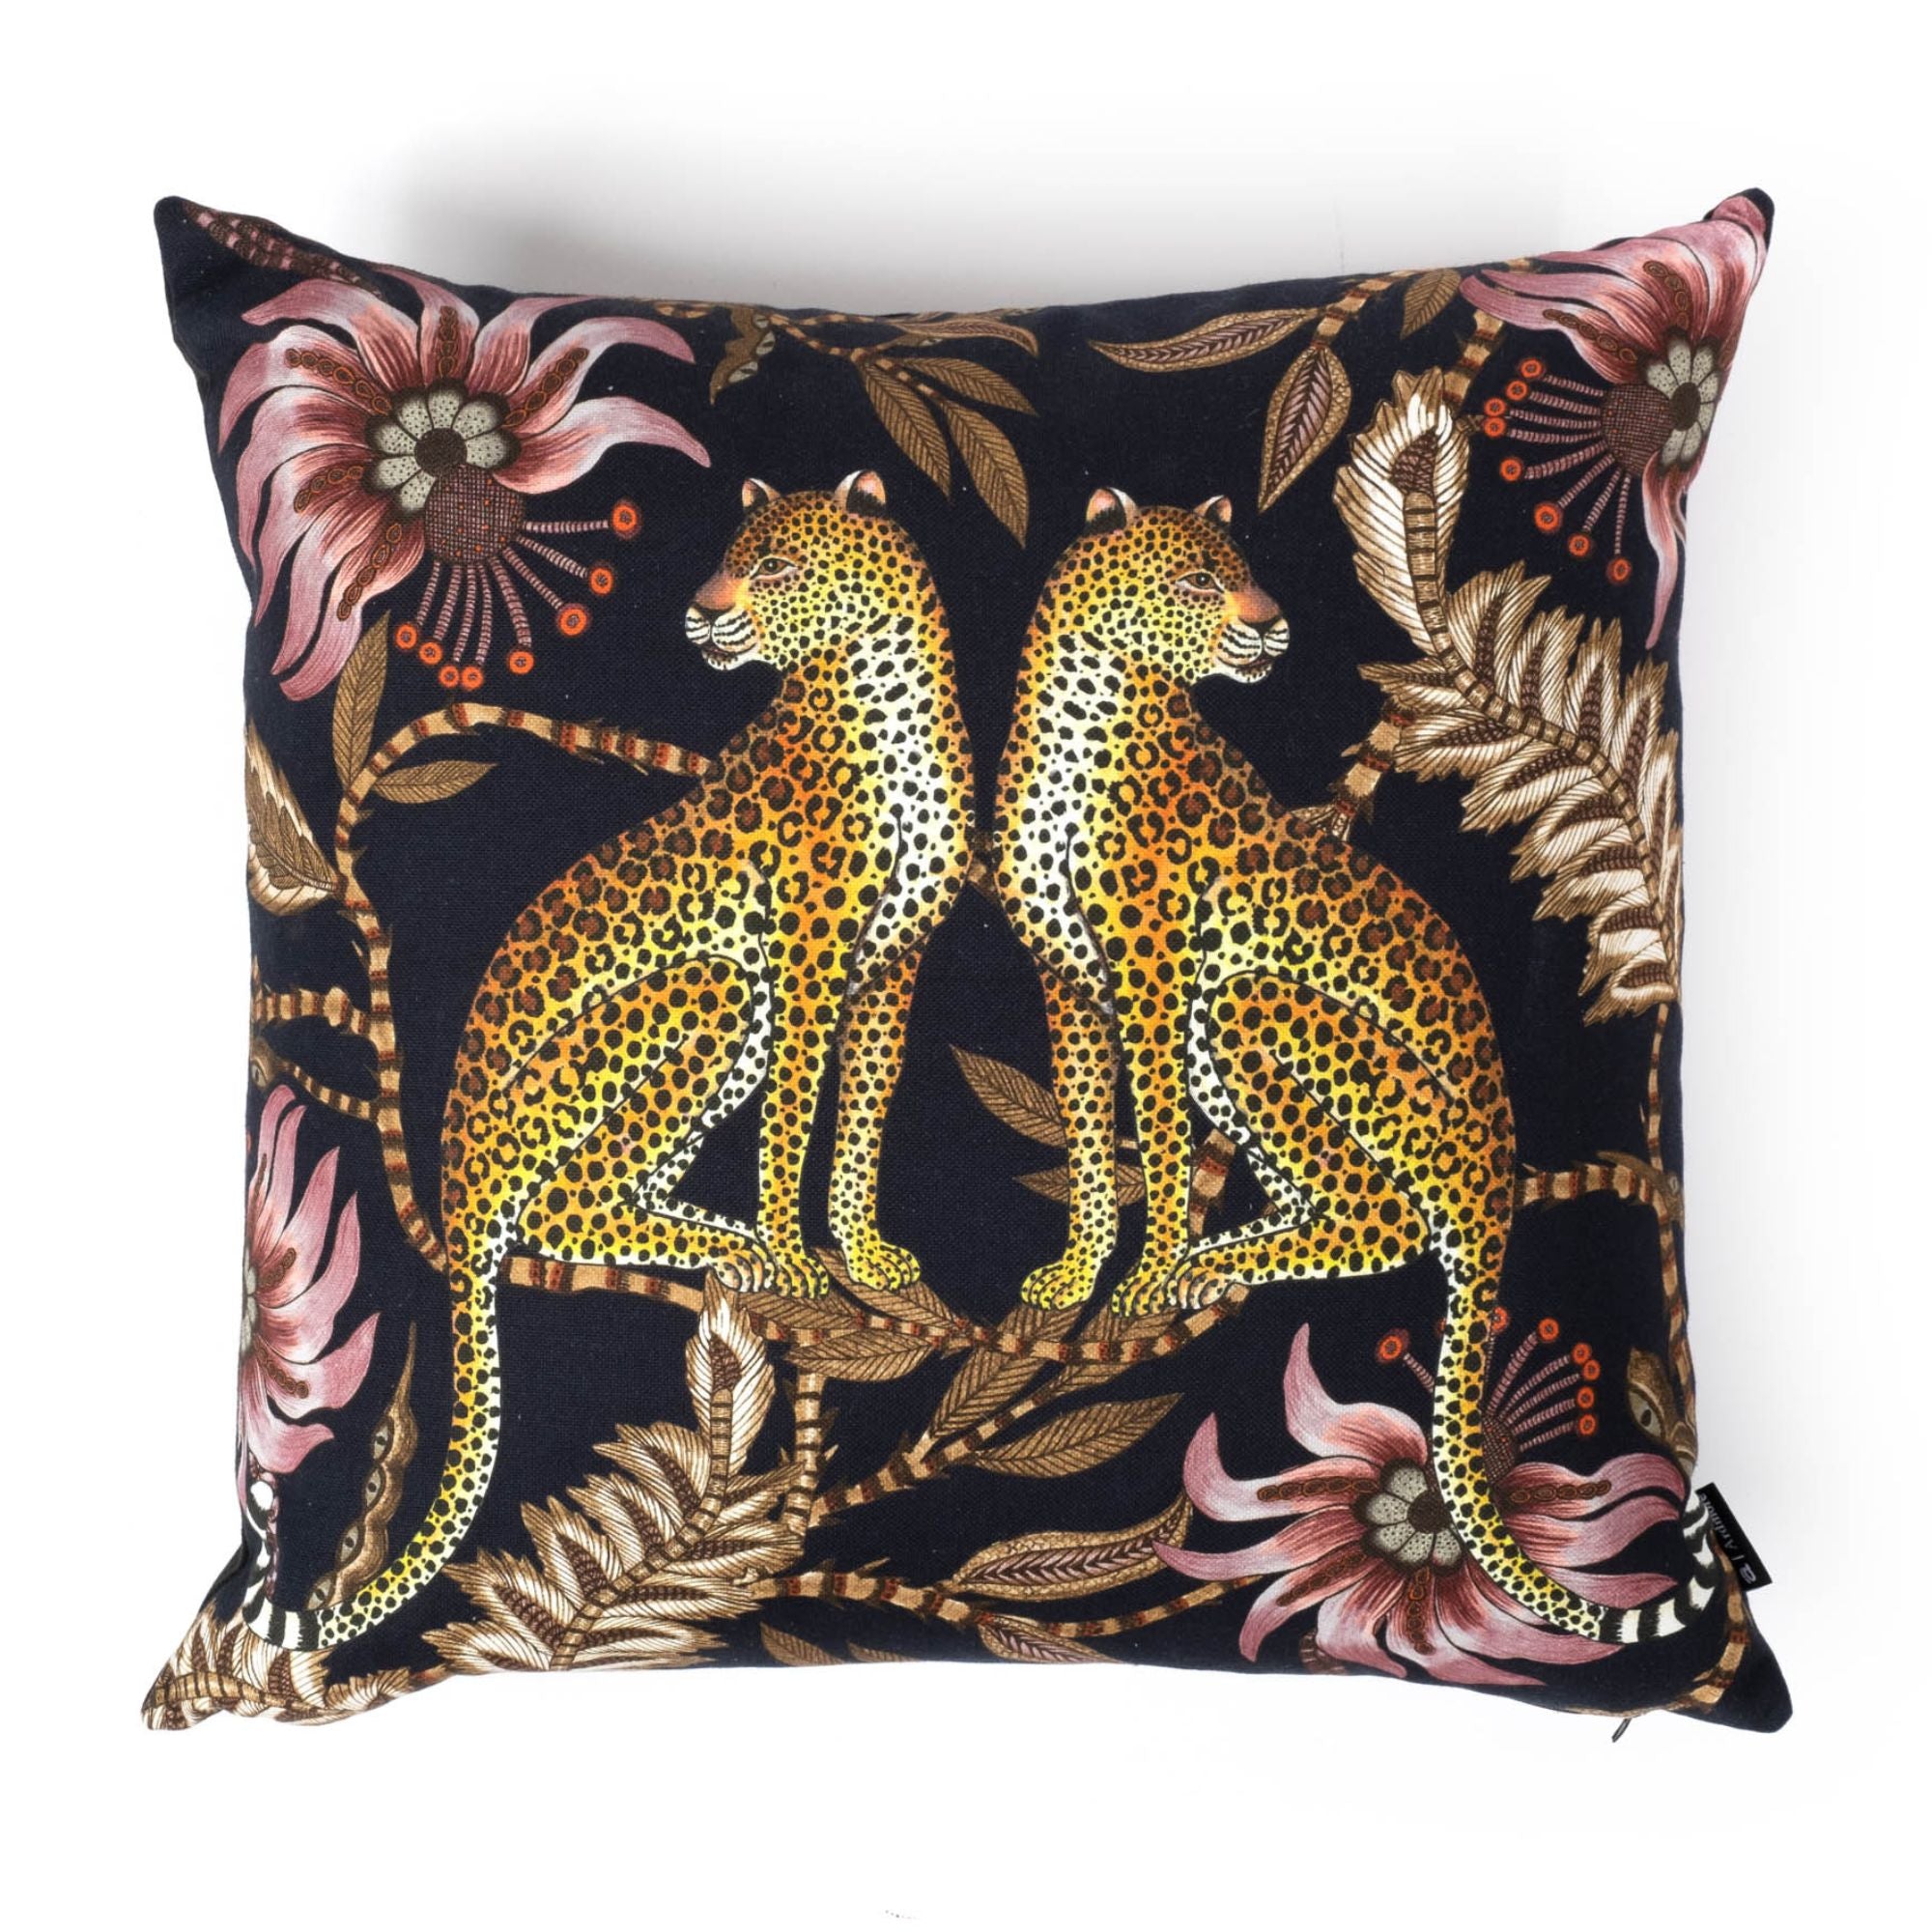 Lovebird Leopards Pillow - Cotton - Night